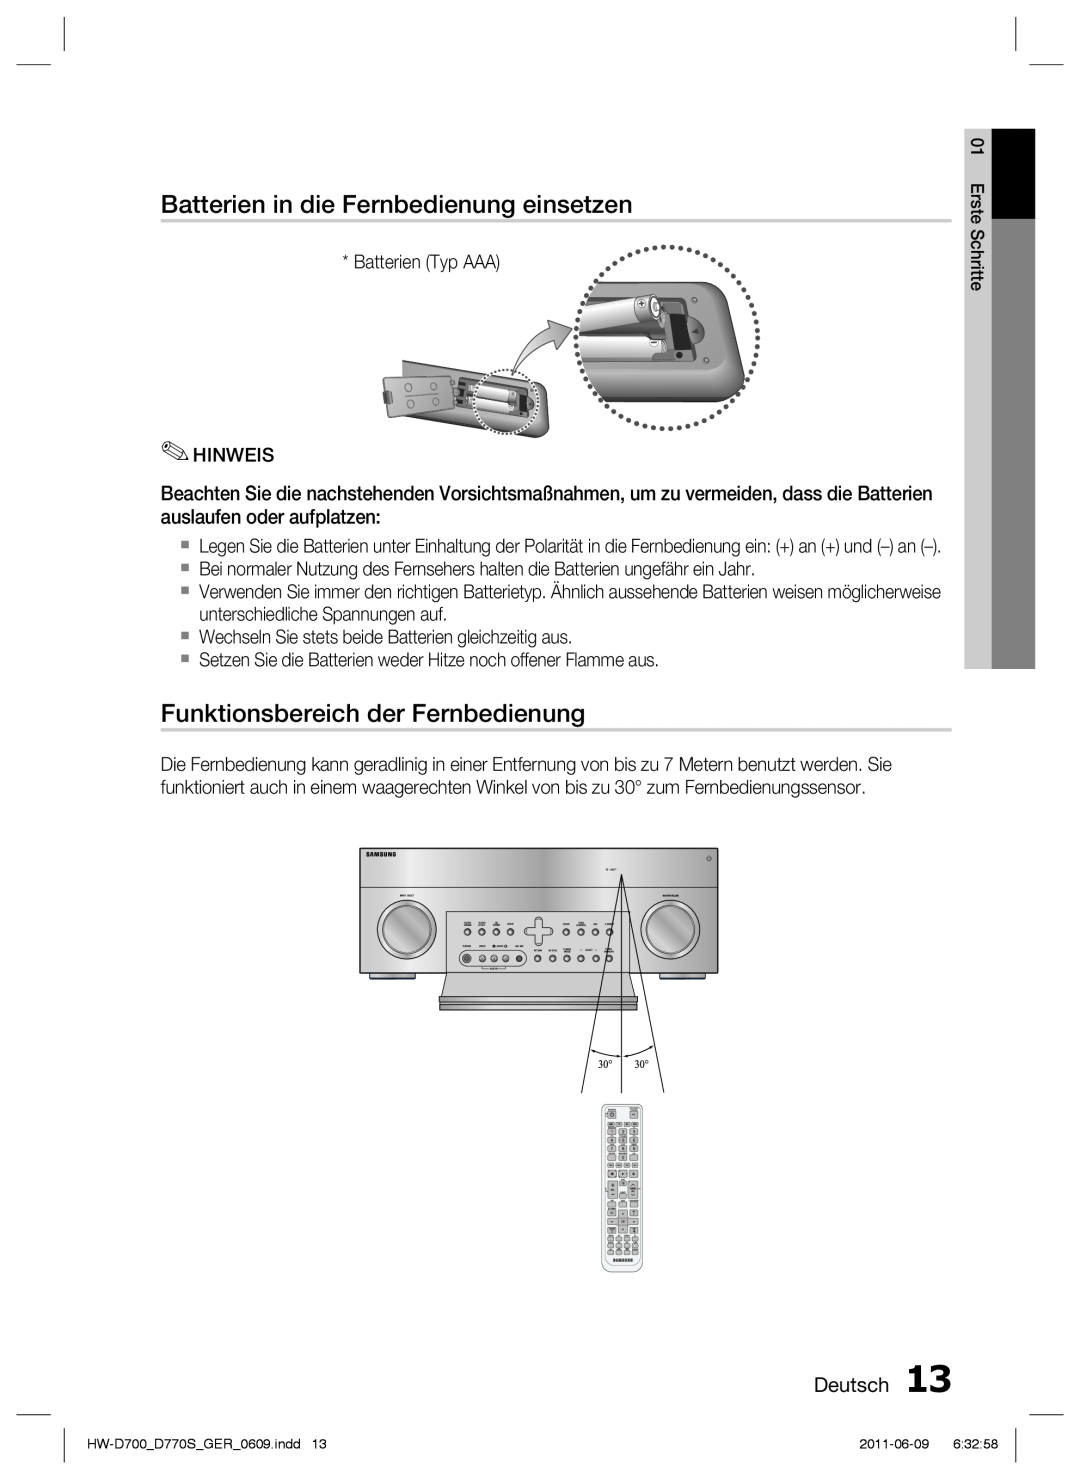 Samsung HW-D700/EN, HW-D770S/EN manual Batterien in die Fernbedienung einsetzen, Funktionsbereich der Fernbedienung, Deutsch 